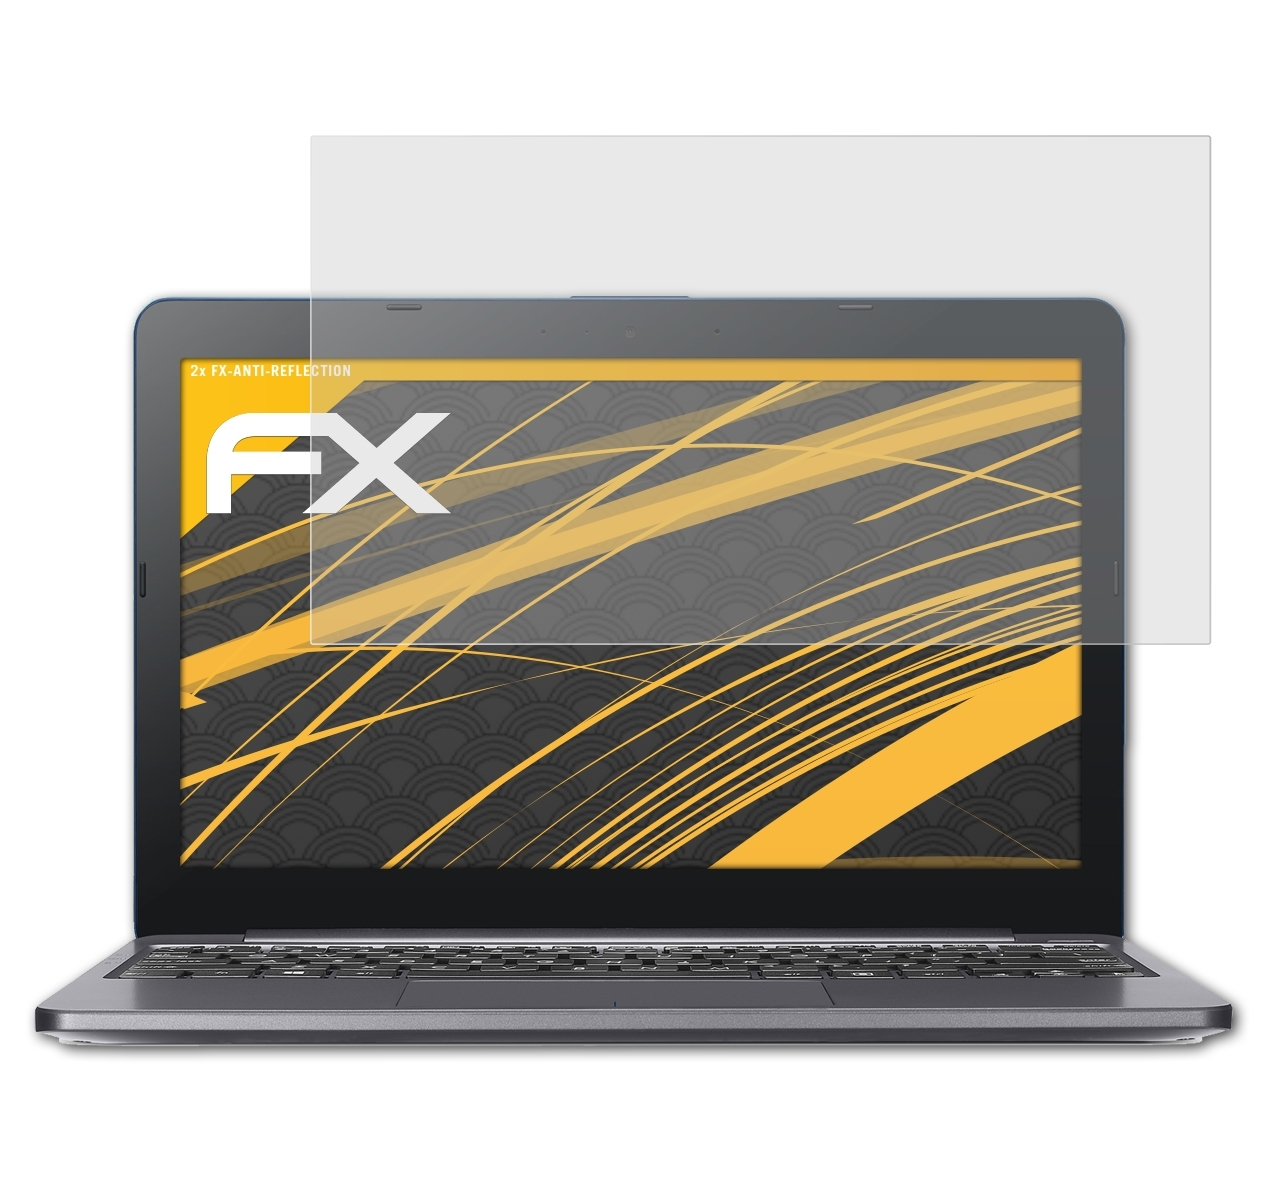 Displayschutz(für Asus FX-Antireflex E203NA) ATFOLIX 2x Laptop